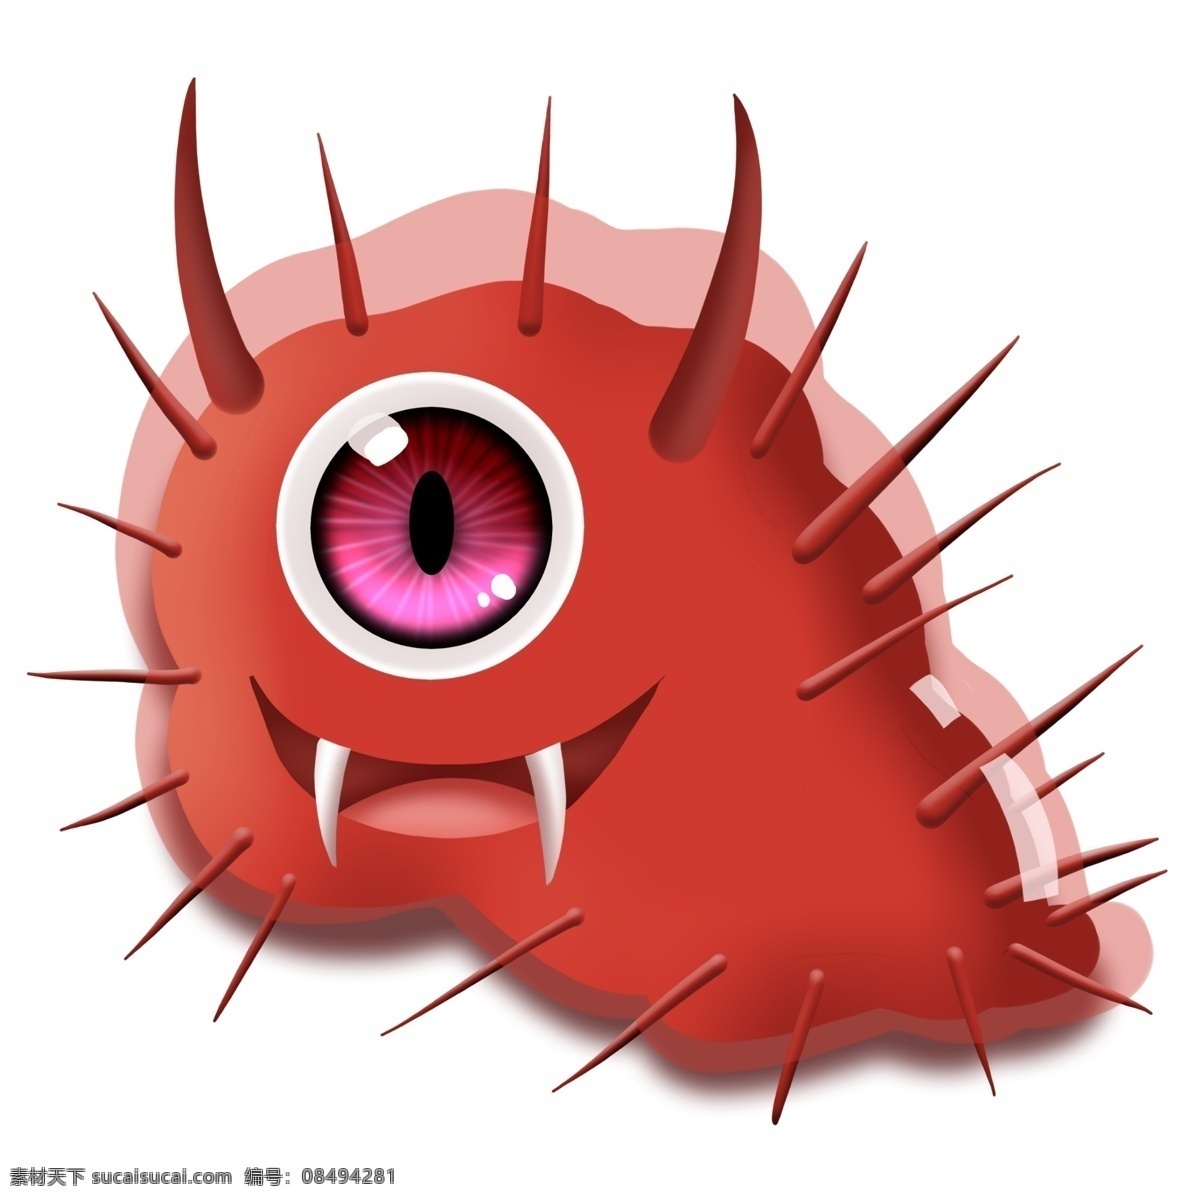 红色 恶魔 病毒 病菌 细菌 卡通 大眼睛 杆菌 医学 生物 害怕 尖牙 冷笑 疾病 生病 菌体 菌状 细胞